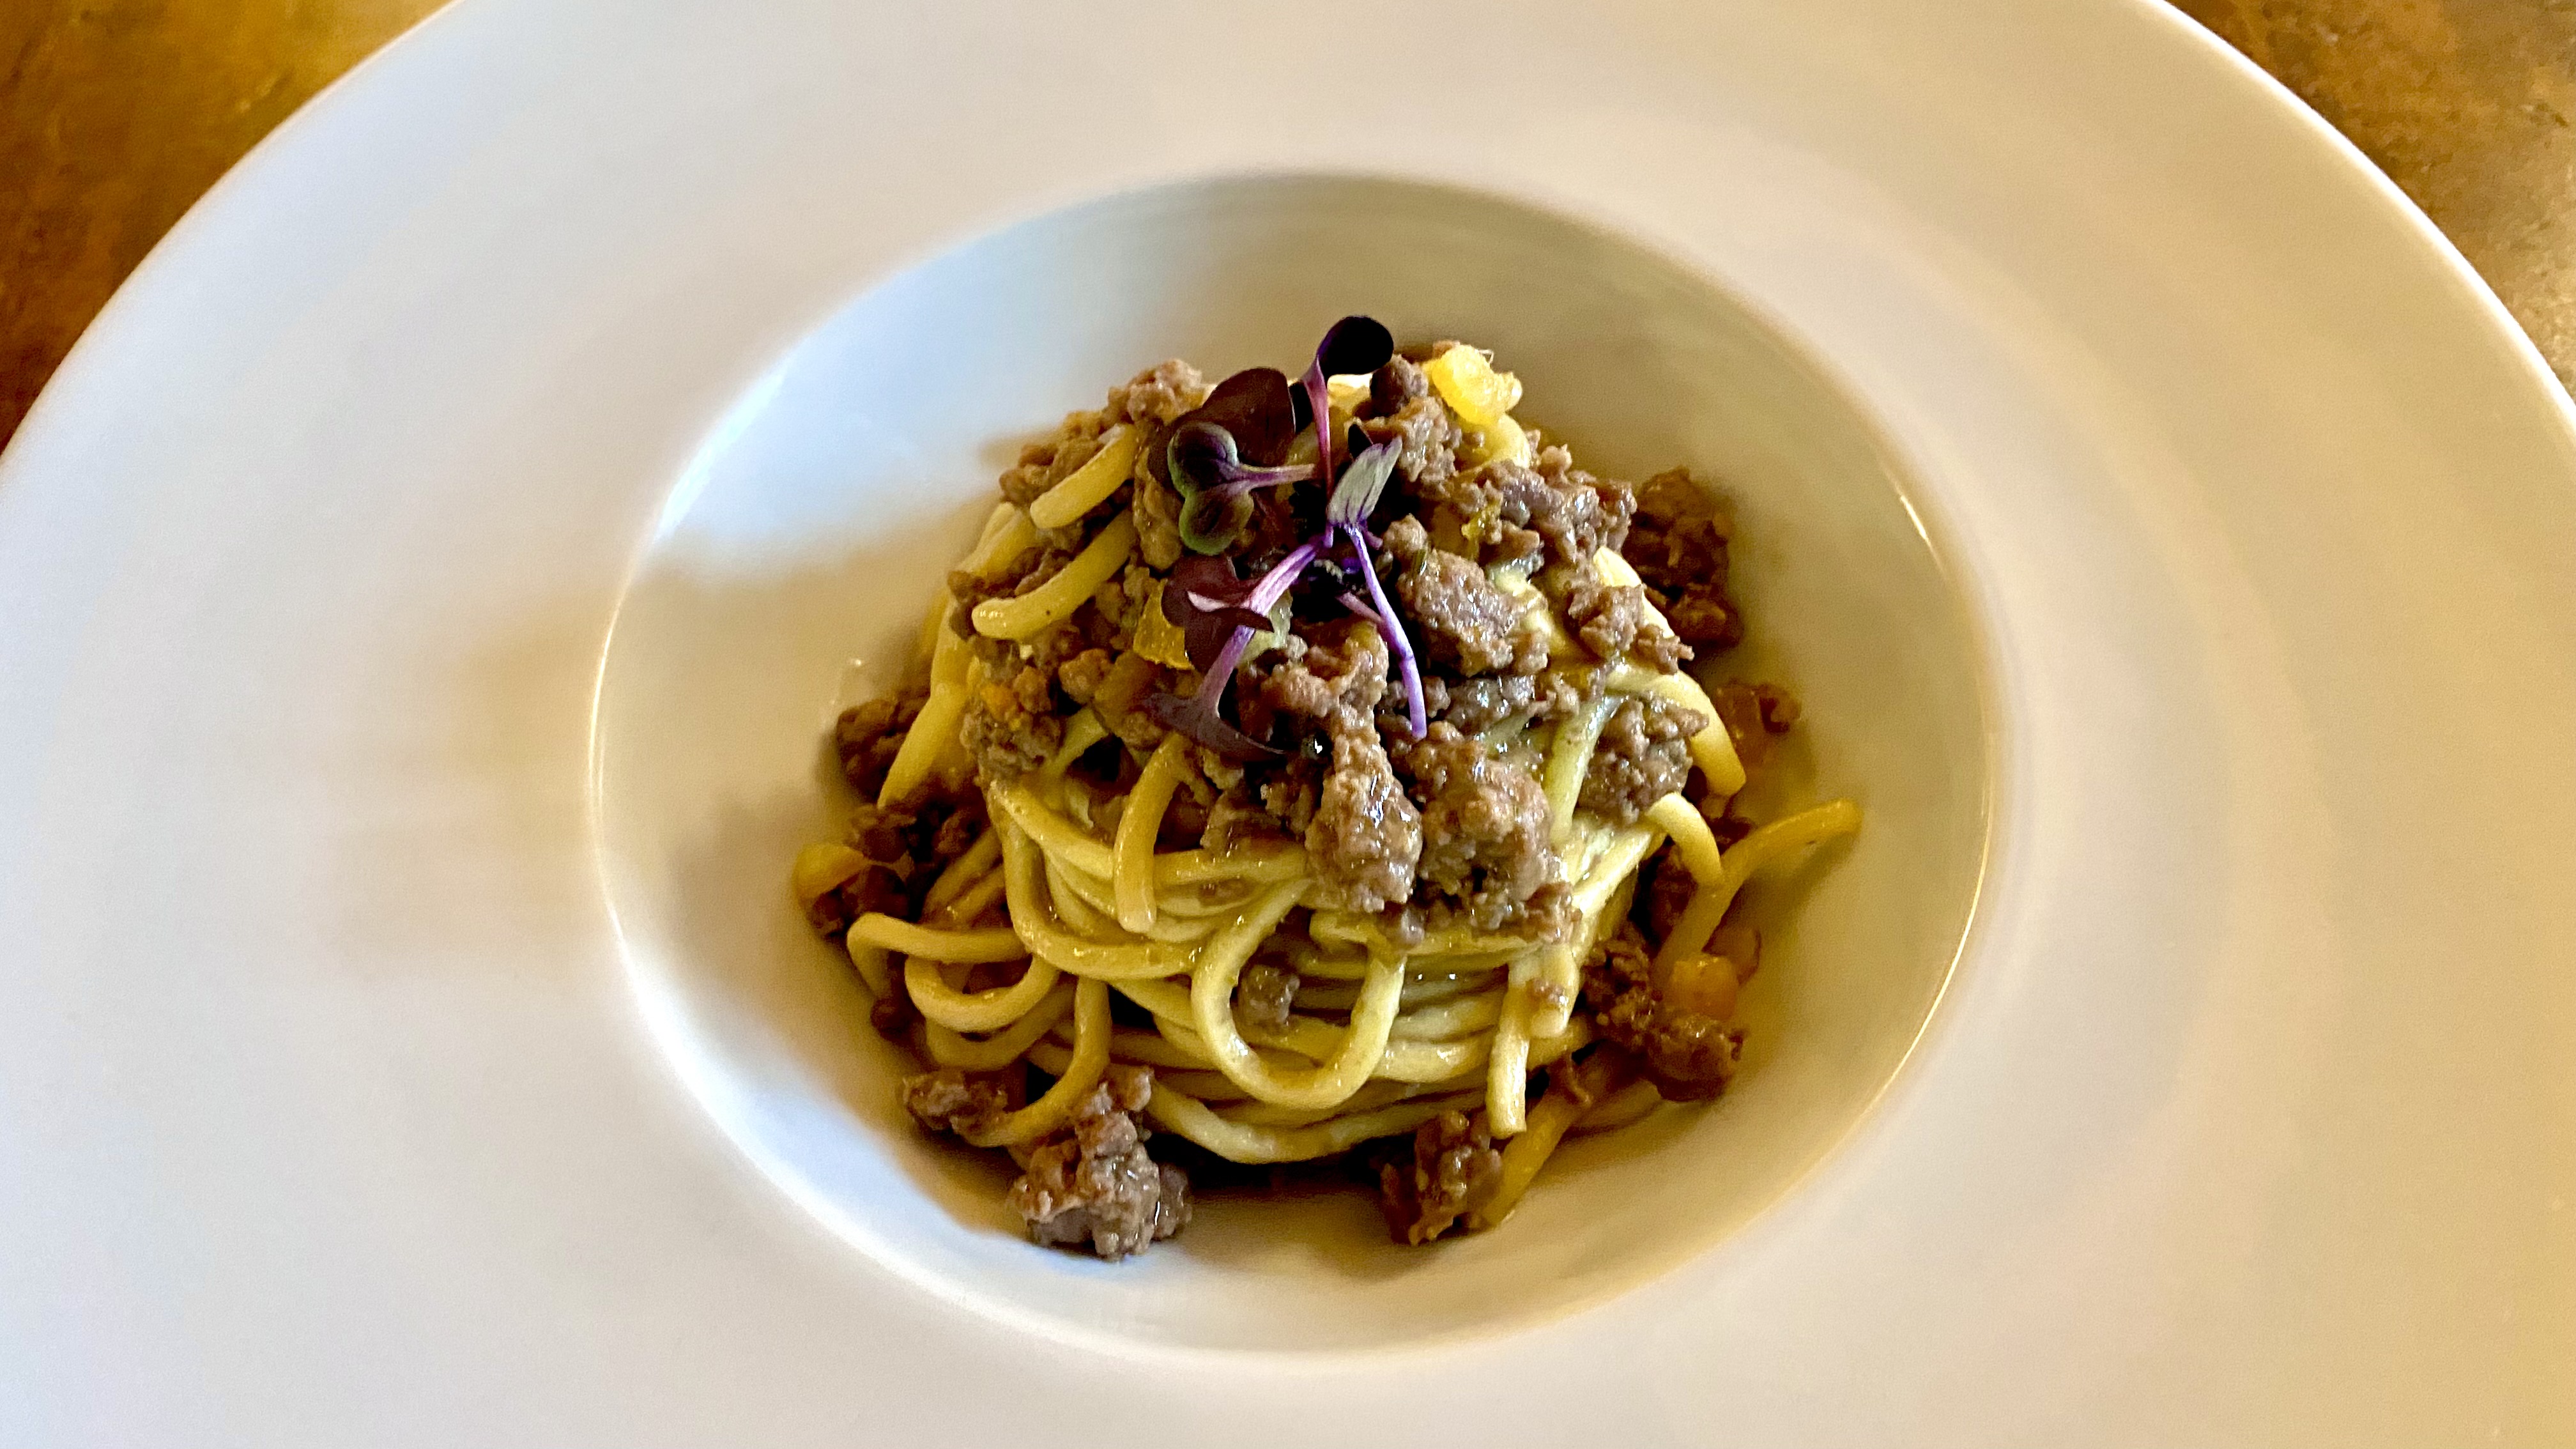 Spaghetti made with durum wheat semolina